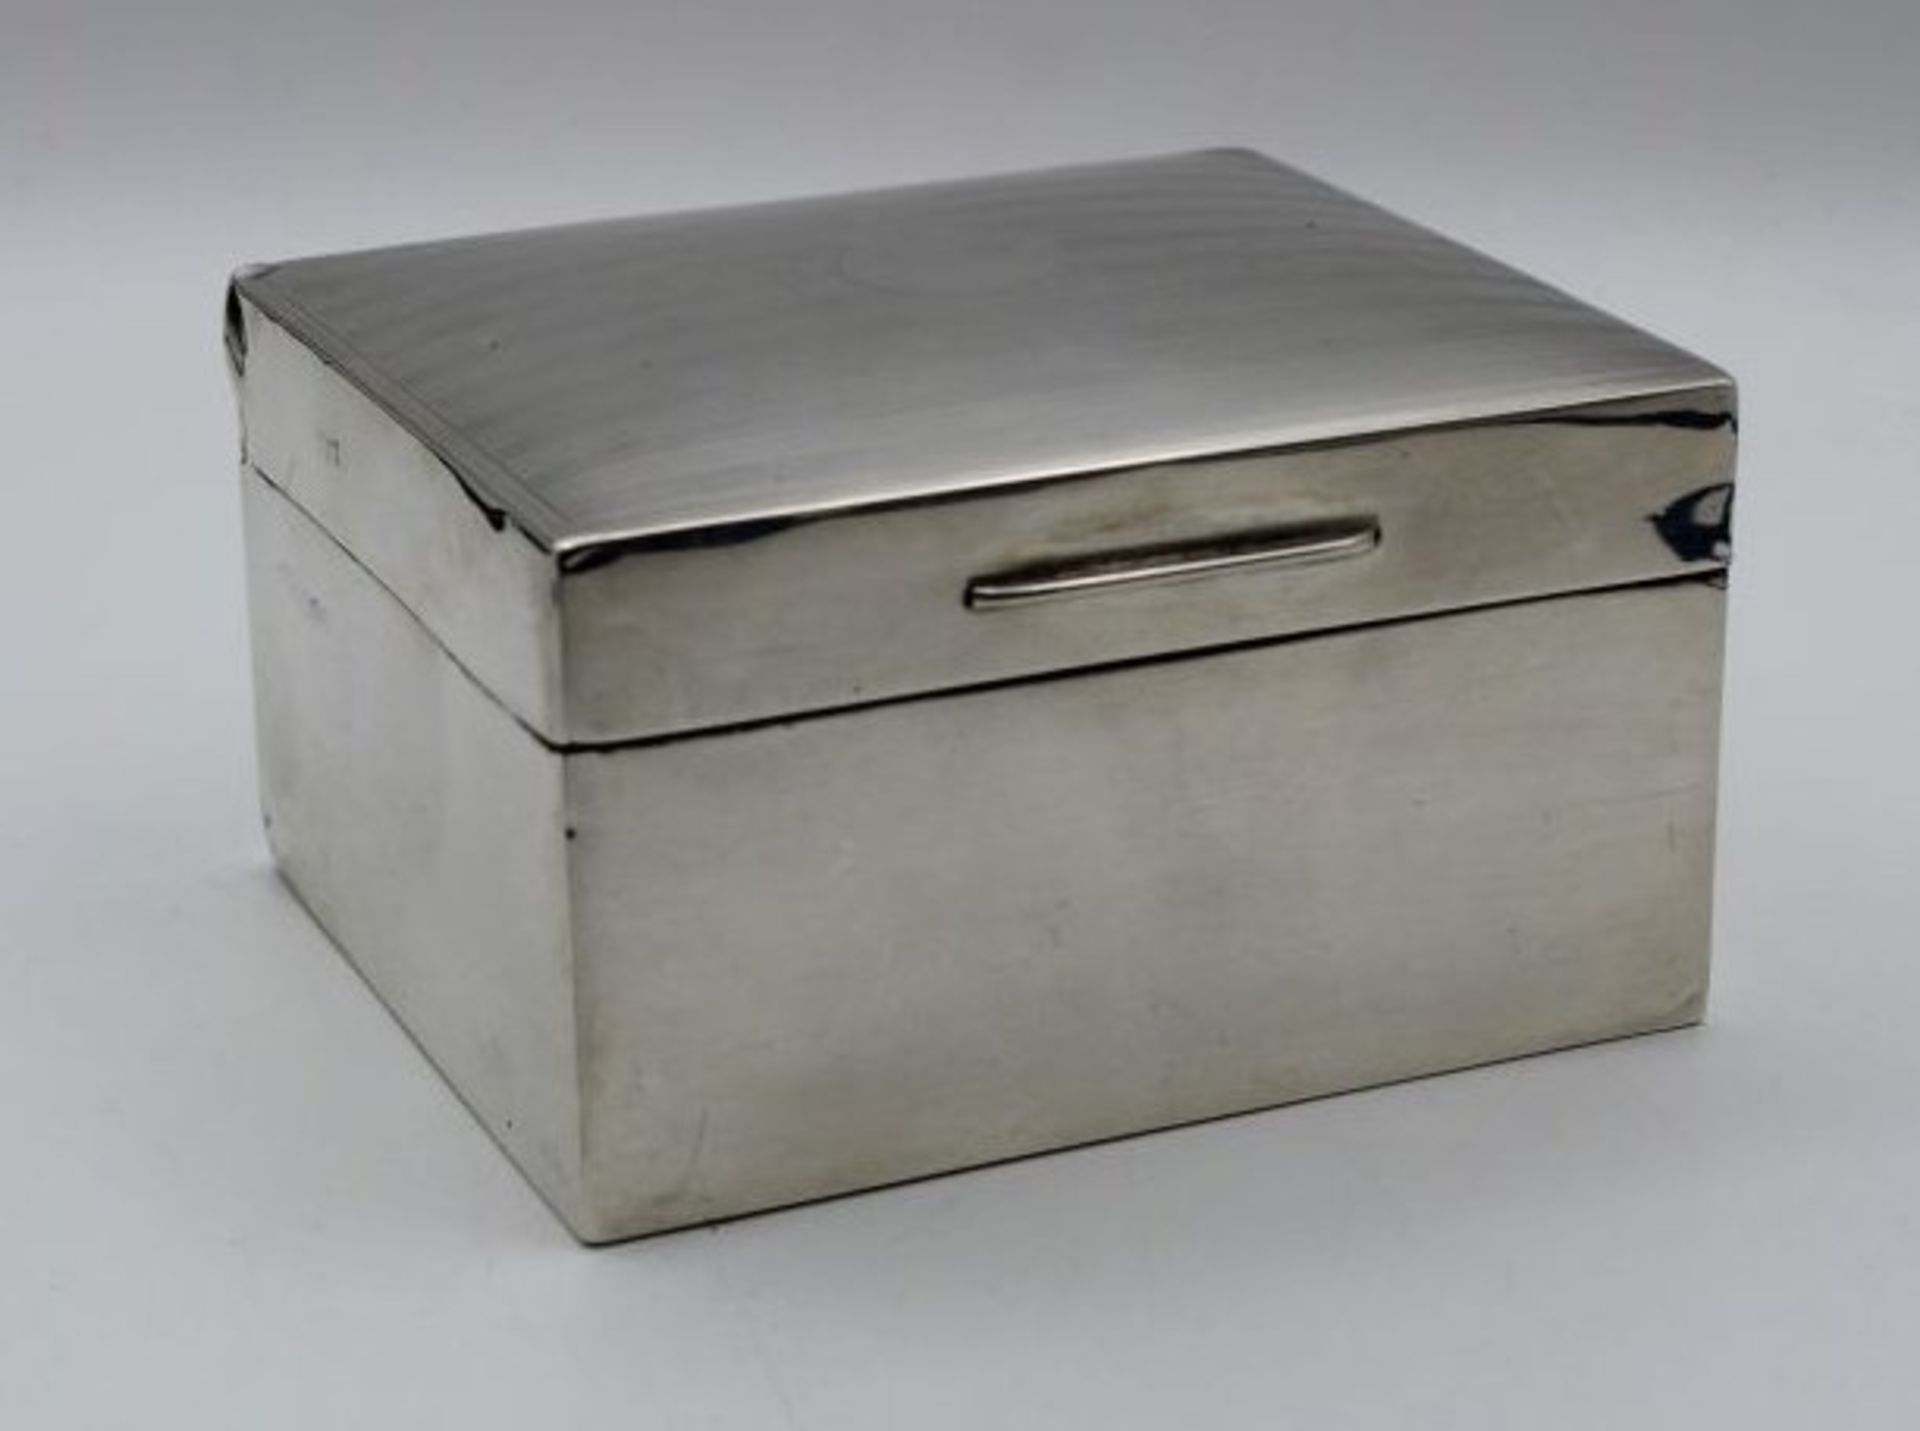 Zigarfettenkasten, Sterling Silber, England, Kemp Bros., innen Holz, zus. 300gr., eine Ecke